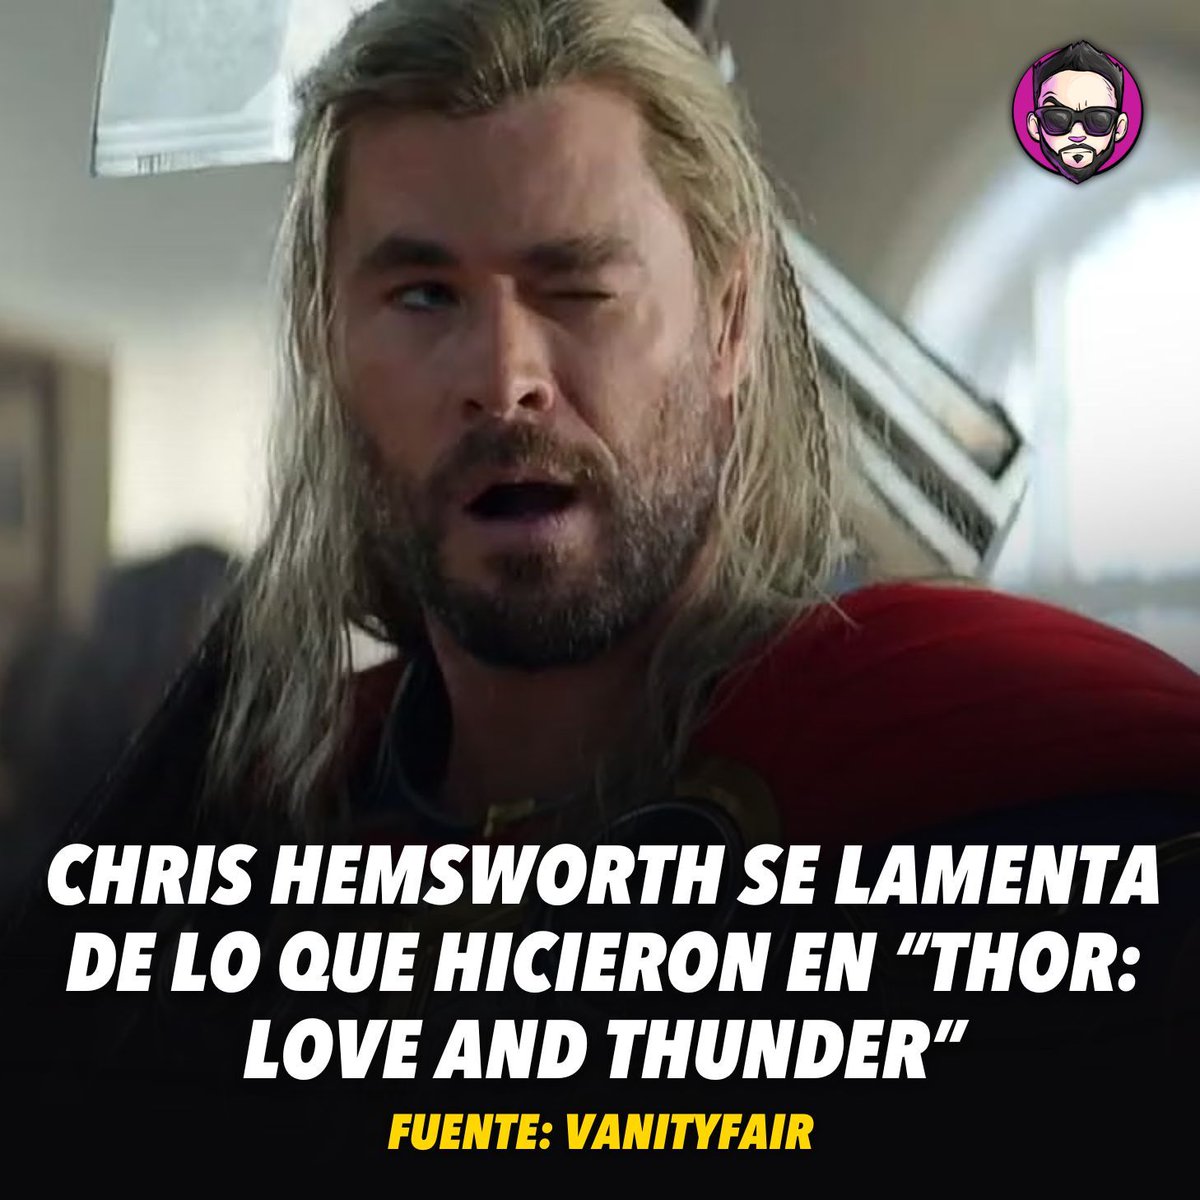 En una entrevista con 'Vanity Fair', #ChrisHemsworth dijo que no le gustó lo que hicieron con el personaje en 'Thor Love and Thunder': 'Me quedé atrapado en la improvisación y la locura, volviéndome una parodia de mí mismo. No mantuve el balance'. ¿Opiniones?